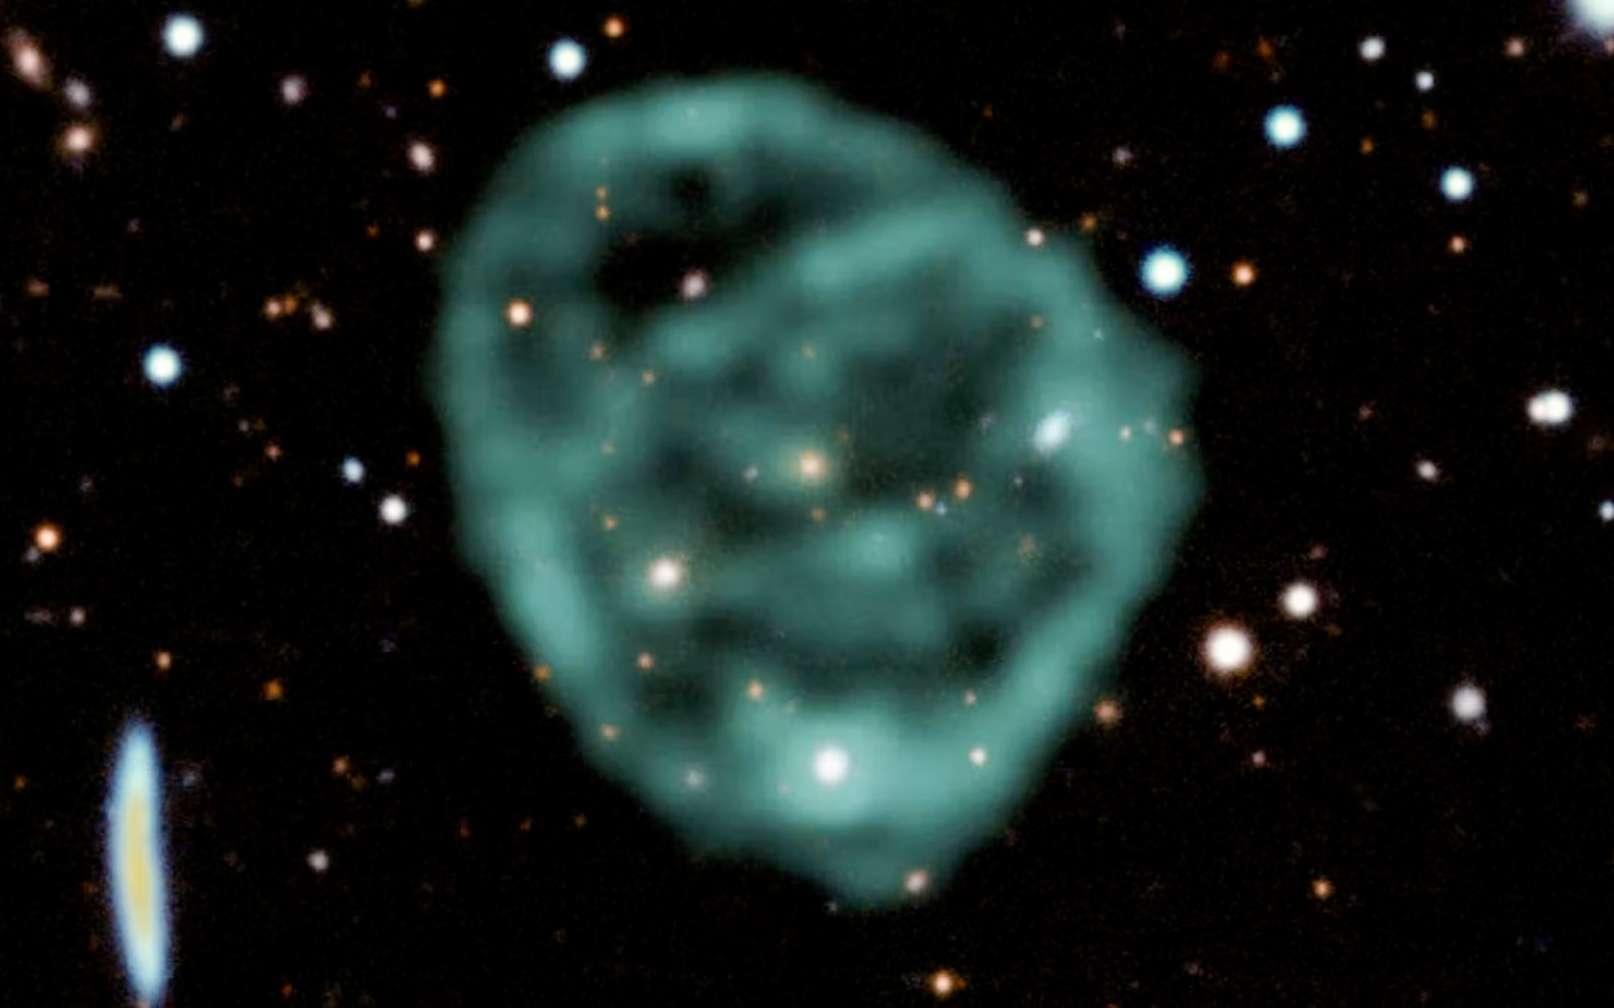 Les données du radiotélescope MeerKAT de SARAO (en vert) montrant un cercle radio superposées aux données dans le visible et le proche infrarouge du Dark Energy Survey permettent de former cette image en fausses couleurs. © J. English (U. Manitoba), EMU, MeerKAT, DES(CTIO)